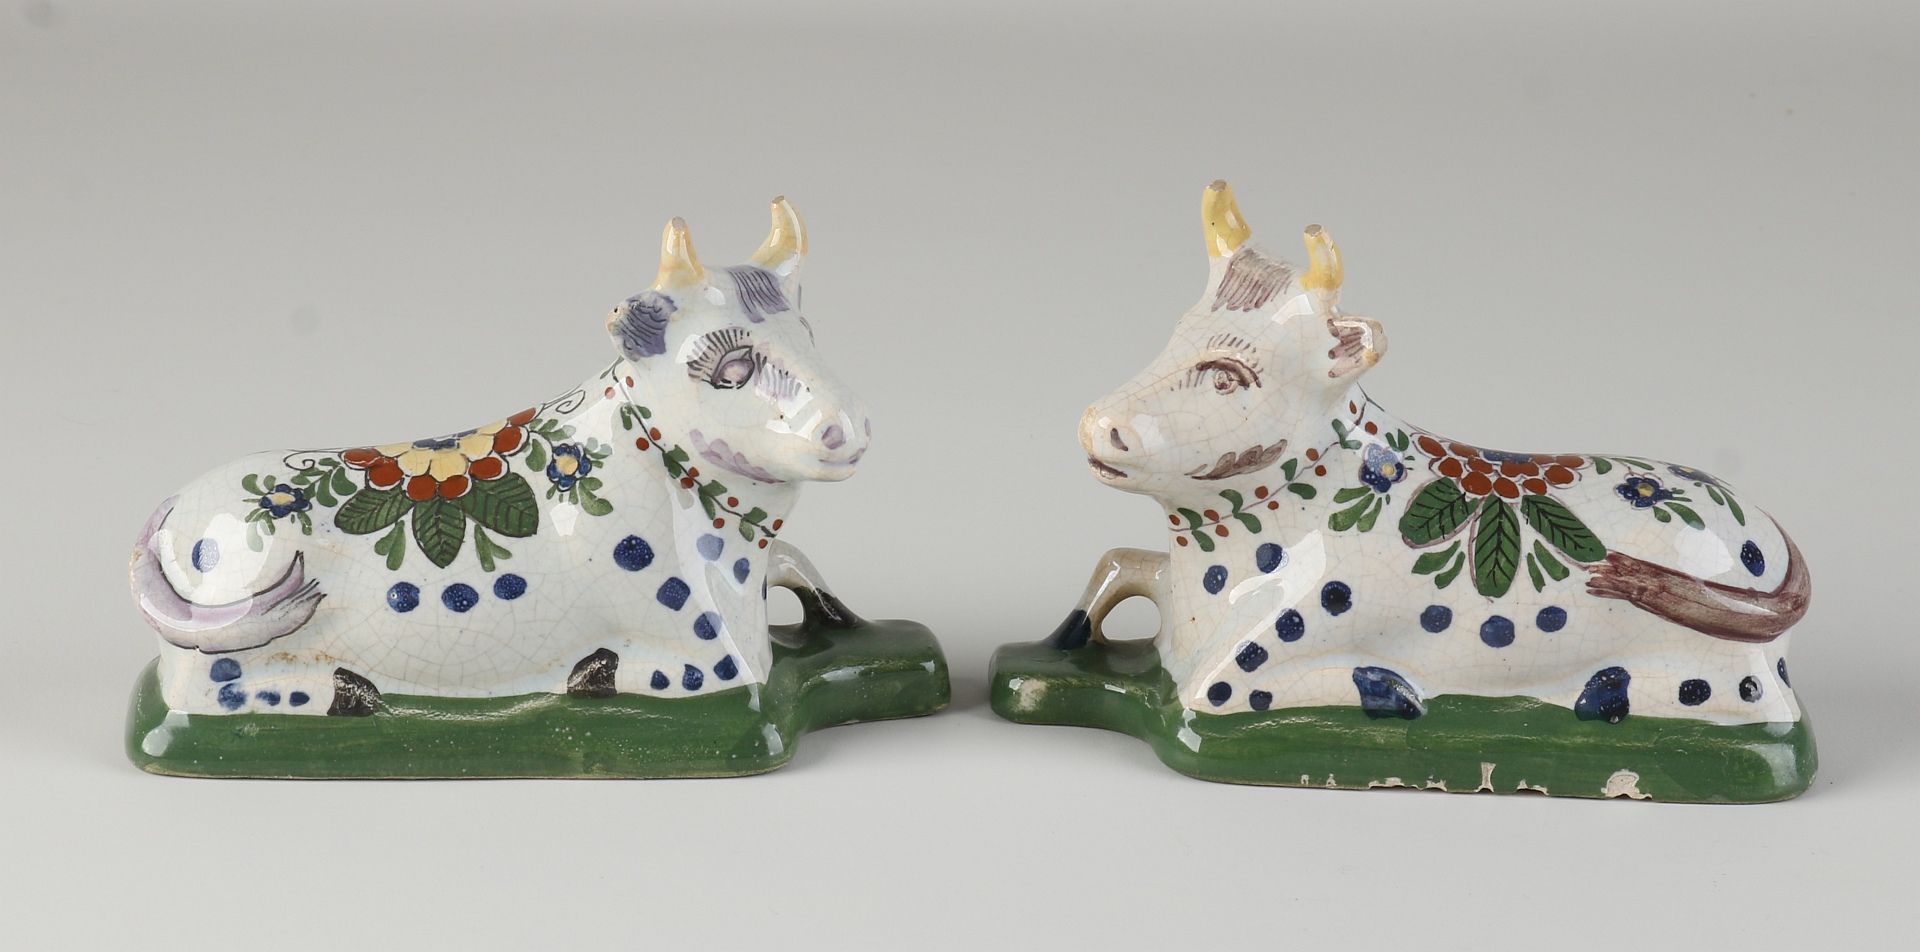 Two Delft cows